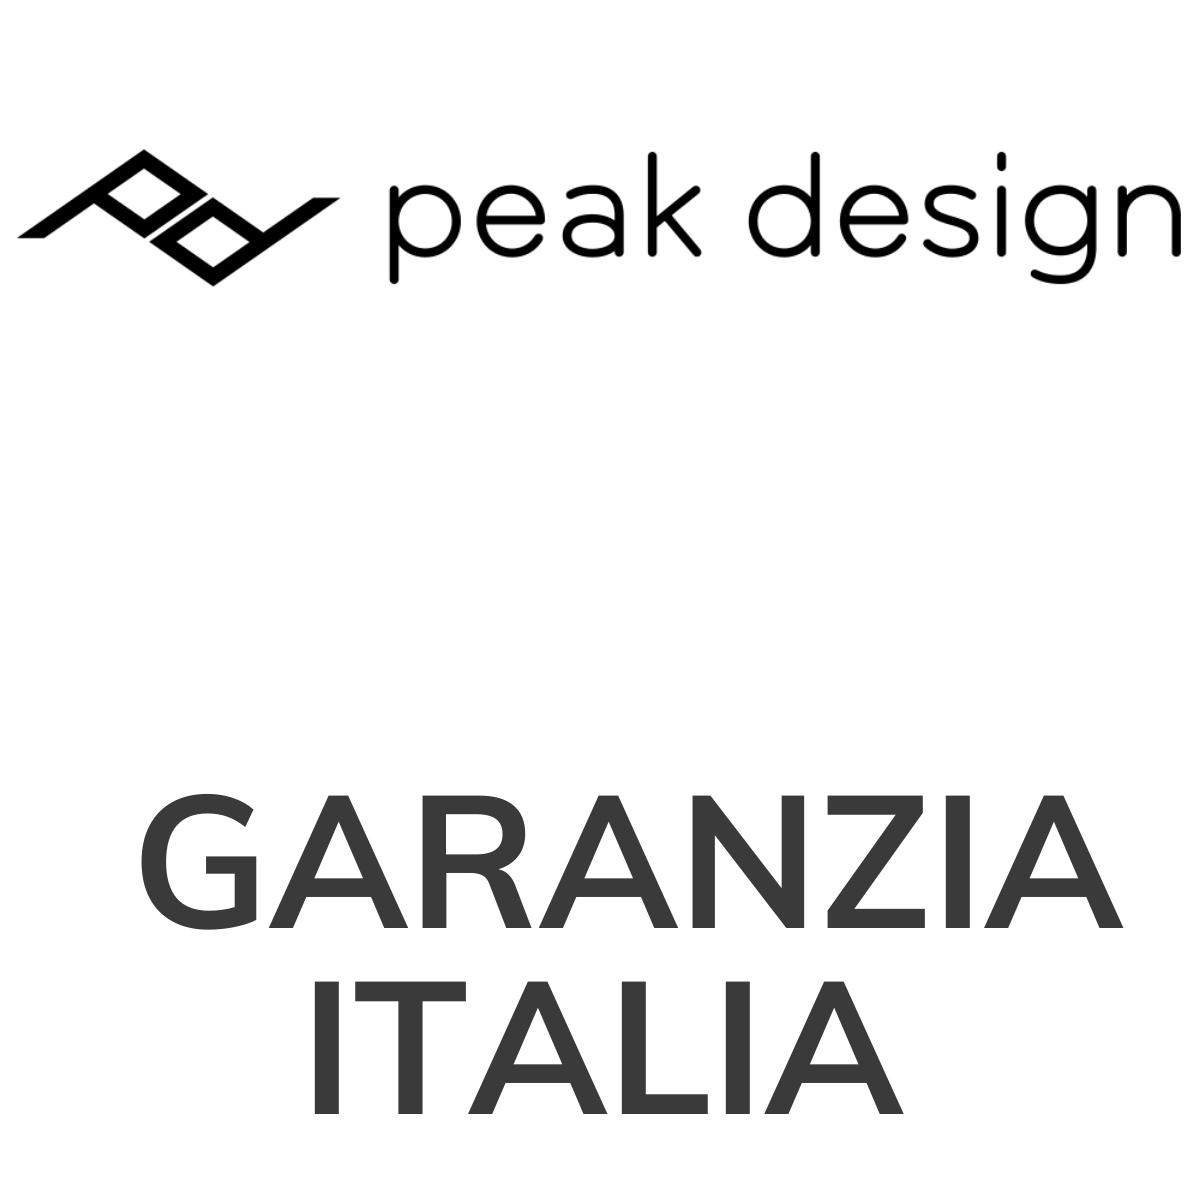 Peak design